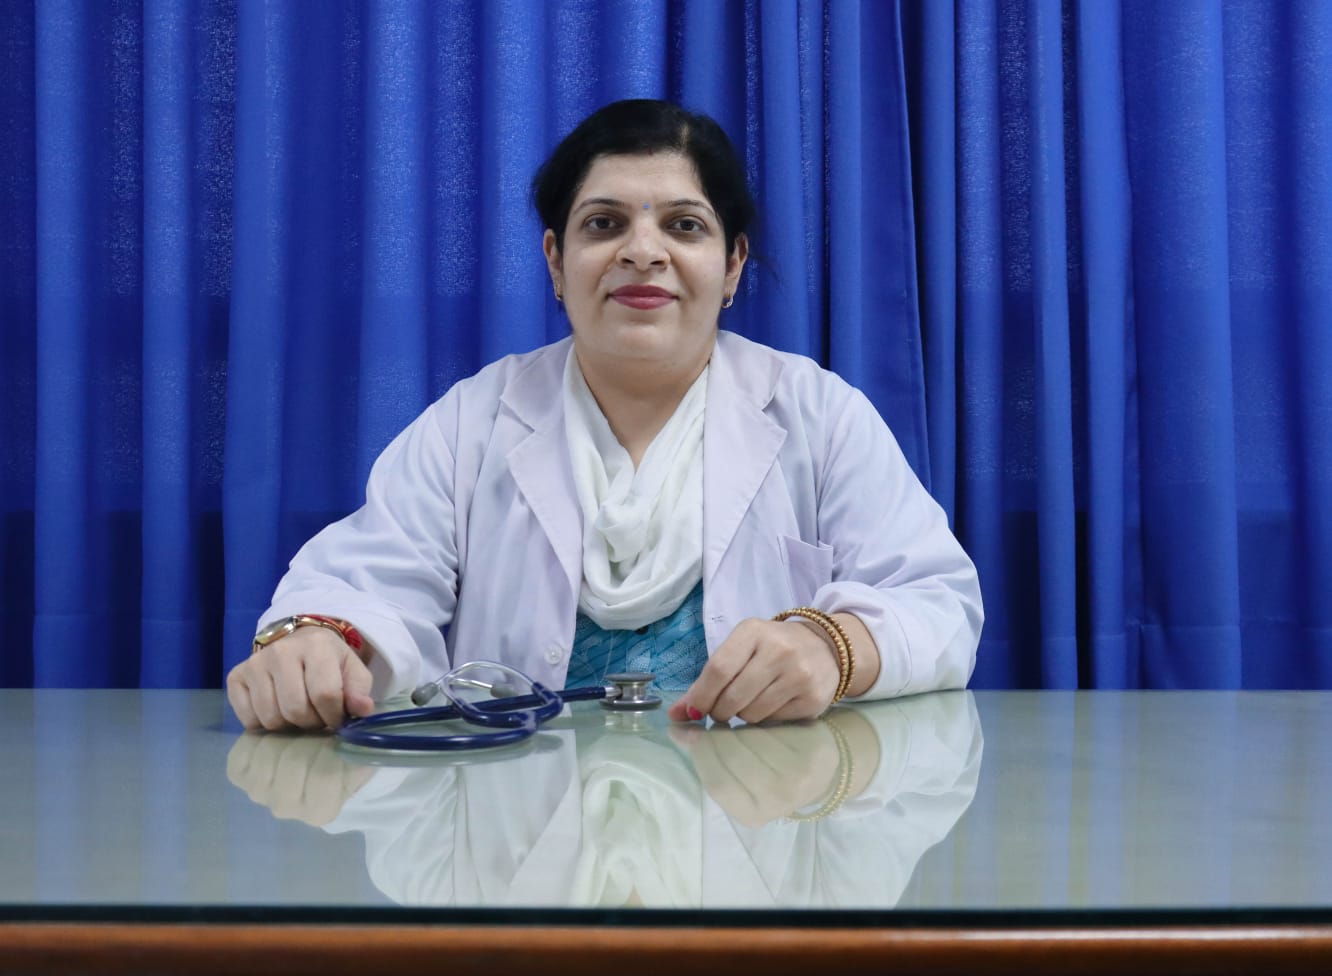 Dr. Aarti Sahni